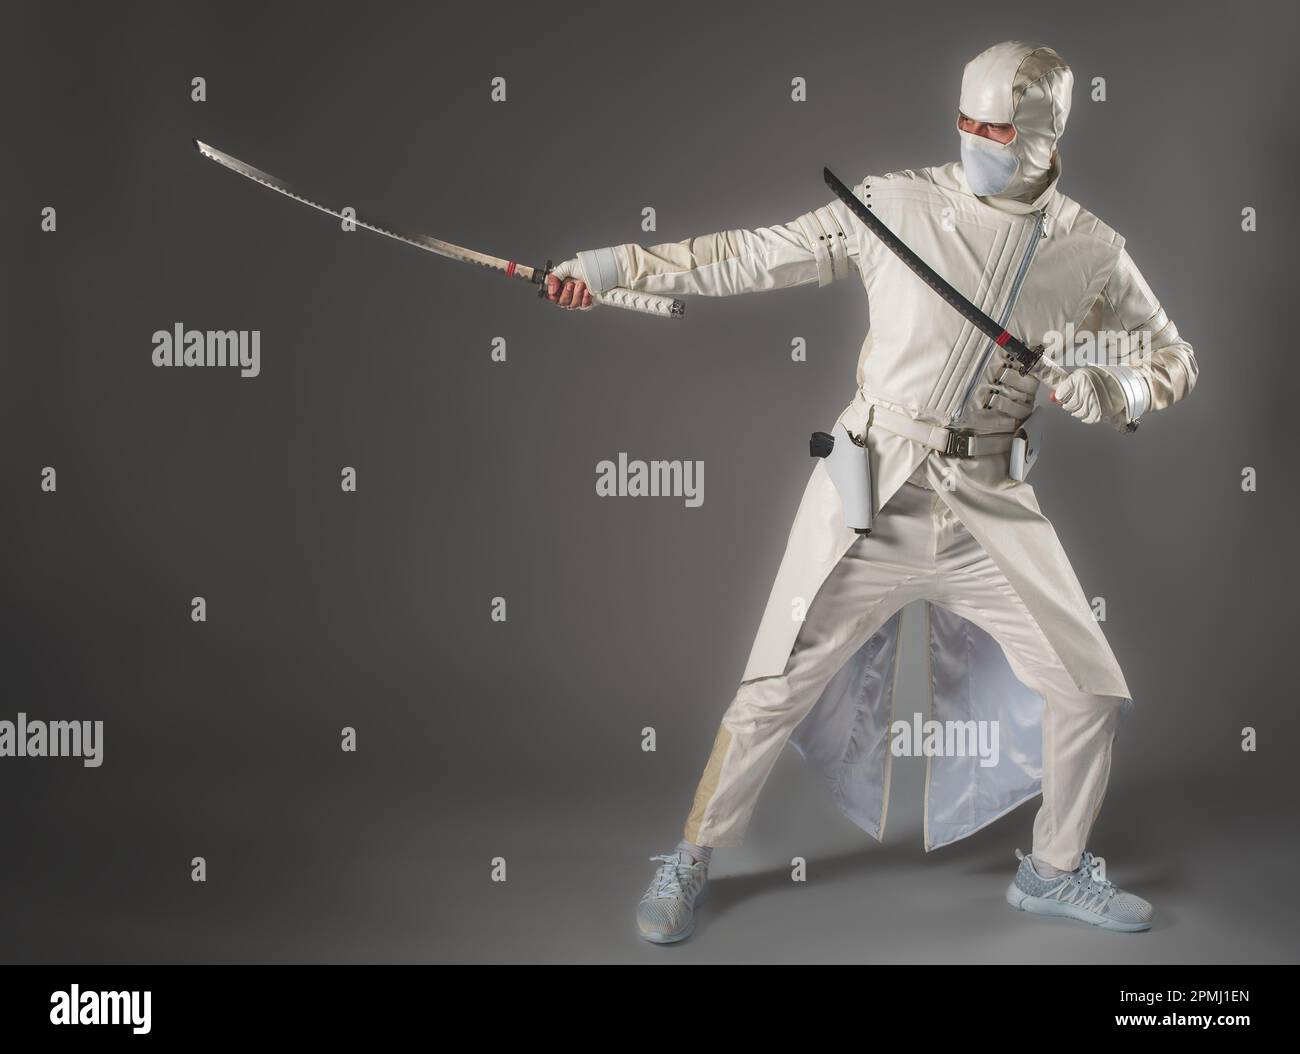 Un homme sous la forme d'un ninja de combat pose avec deux épées sur un fond gris Banque D'Images